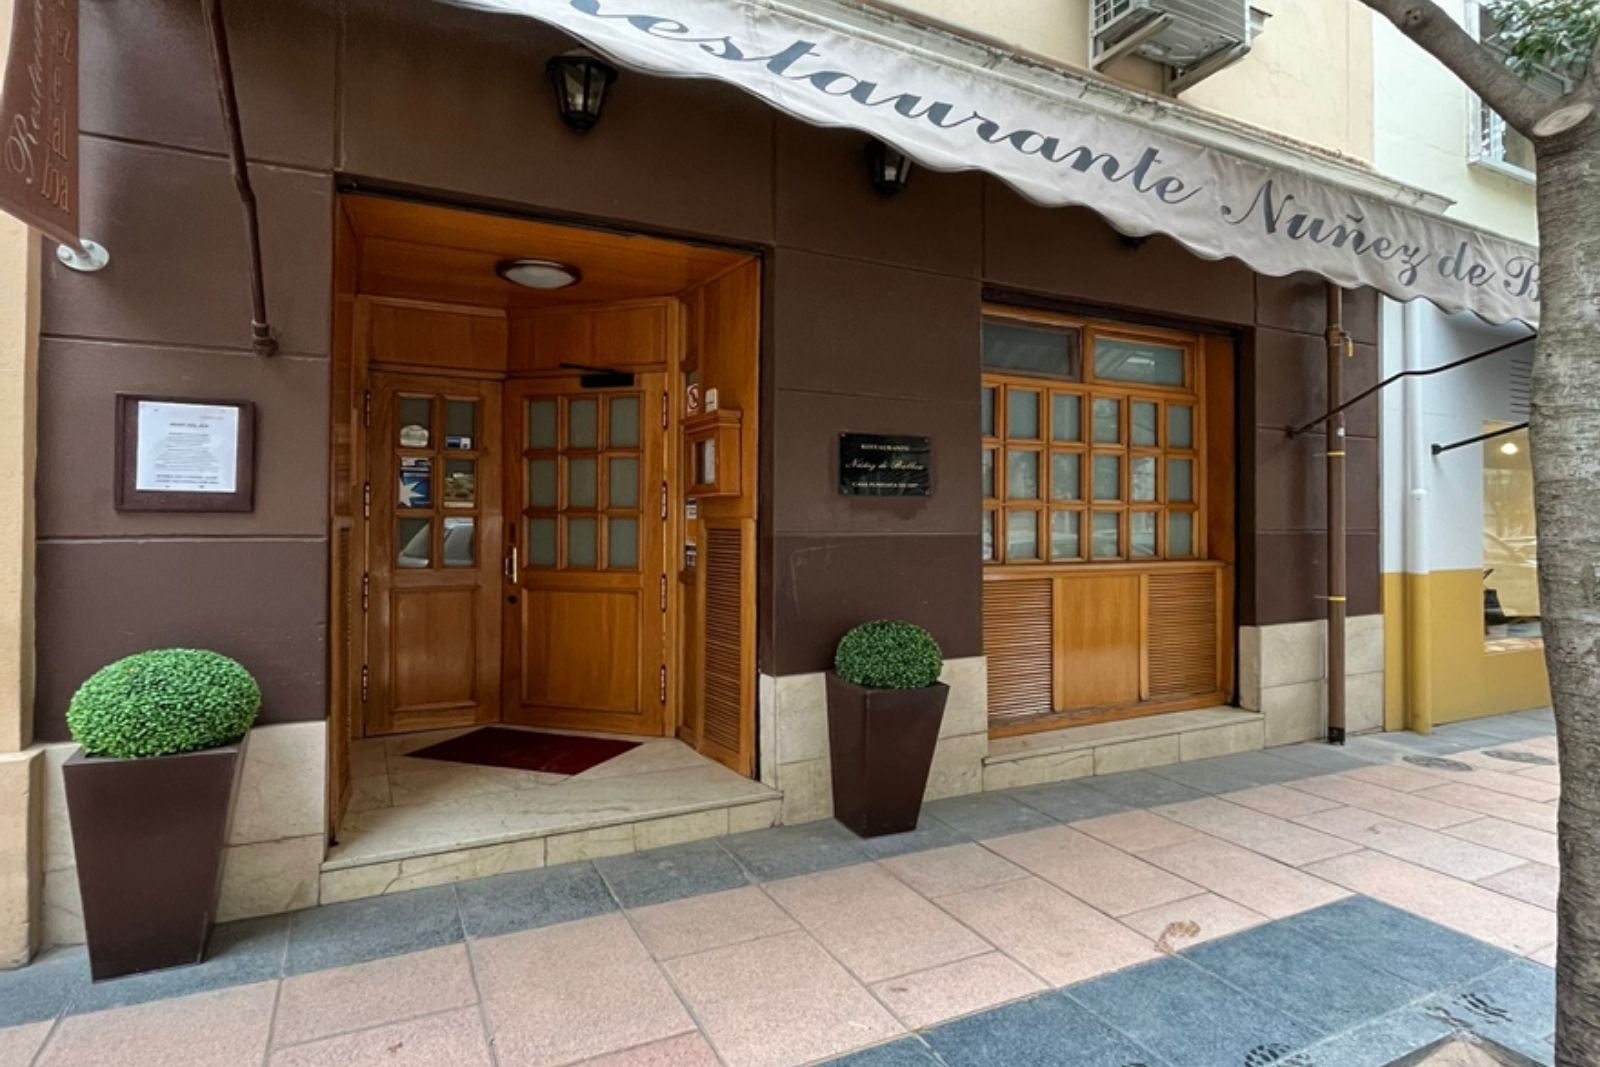 Agencia Astorga inicia la gestión en alquiler de un restaurante en el barrio de salamanca